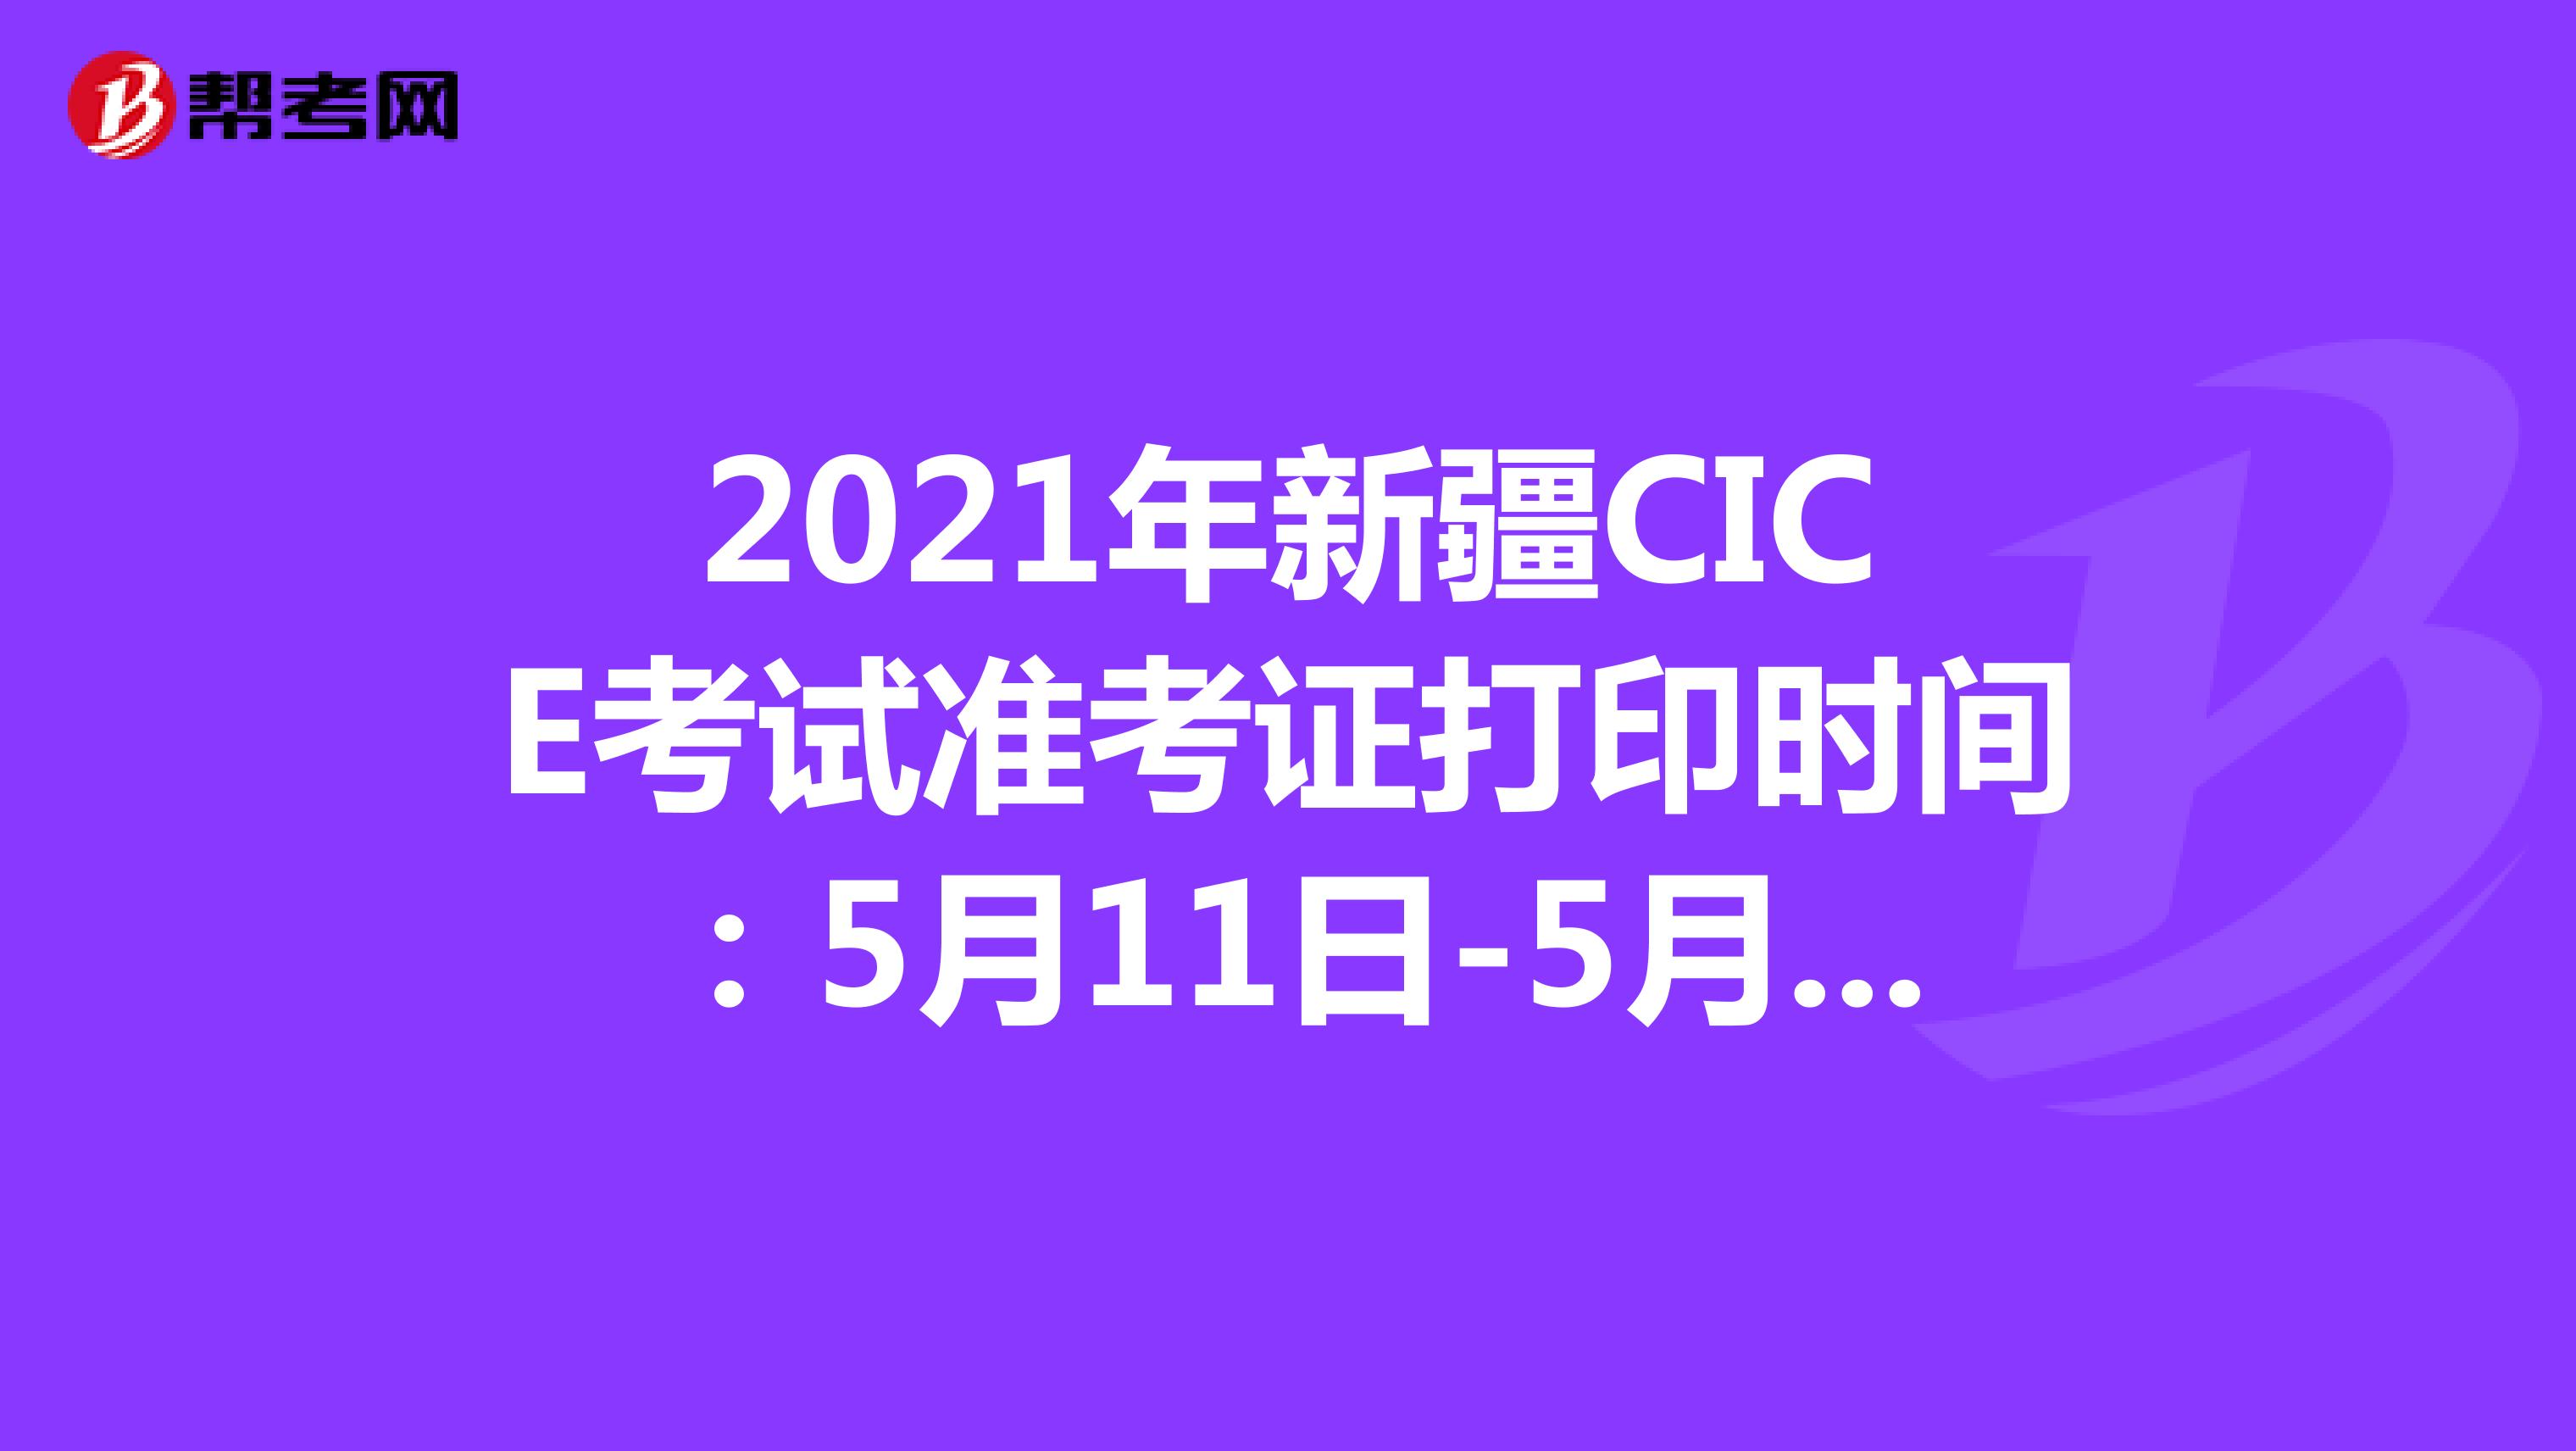 2021年新疆CICE考试准考证打印时间：5月11日-5月14日